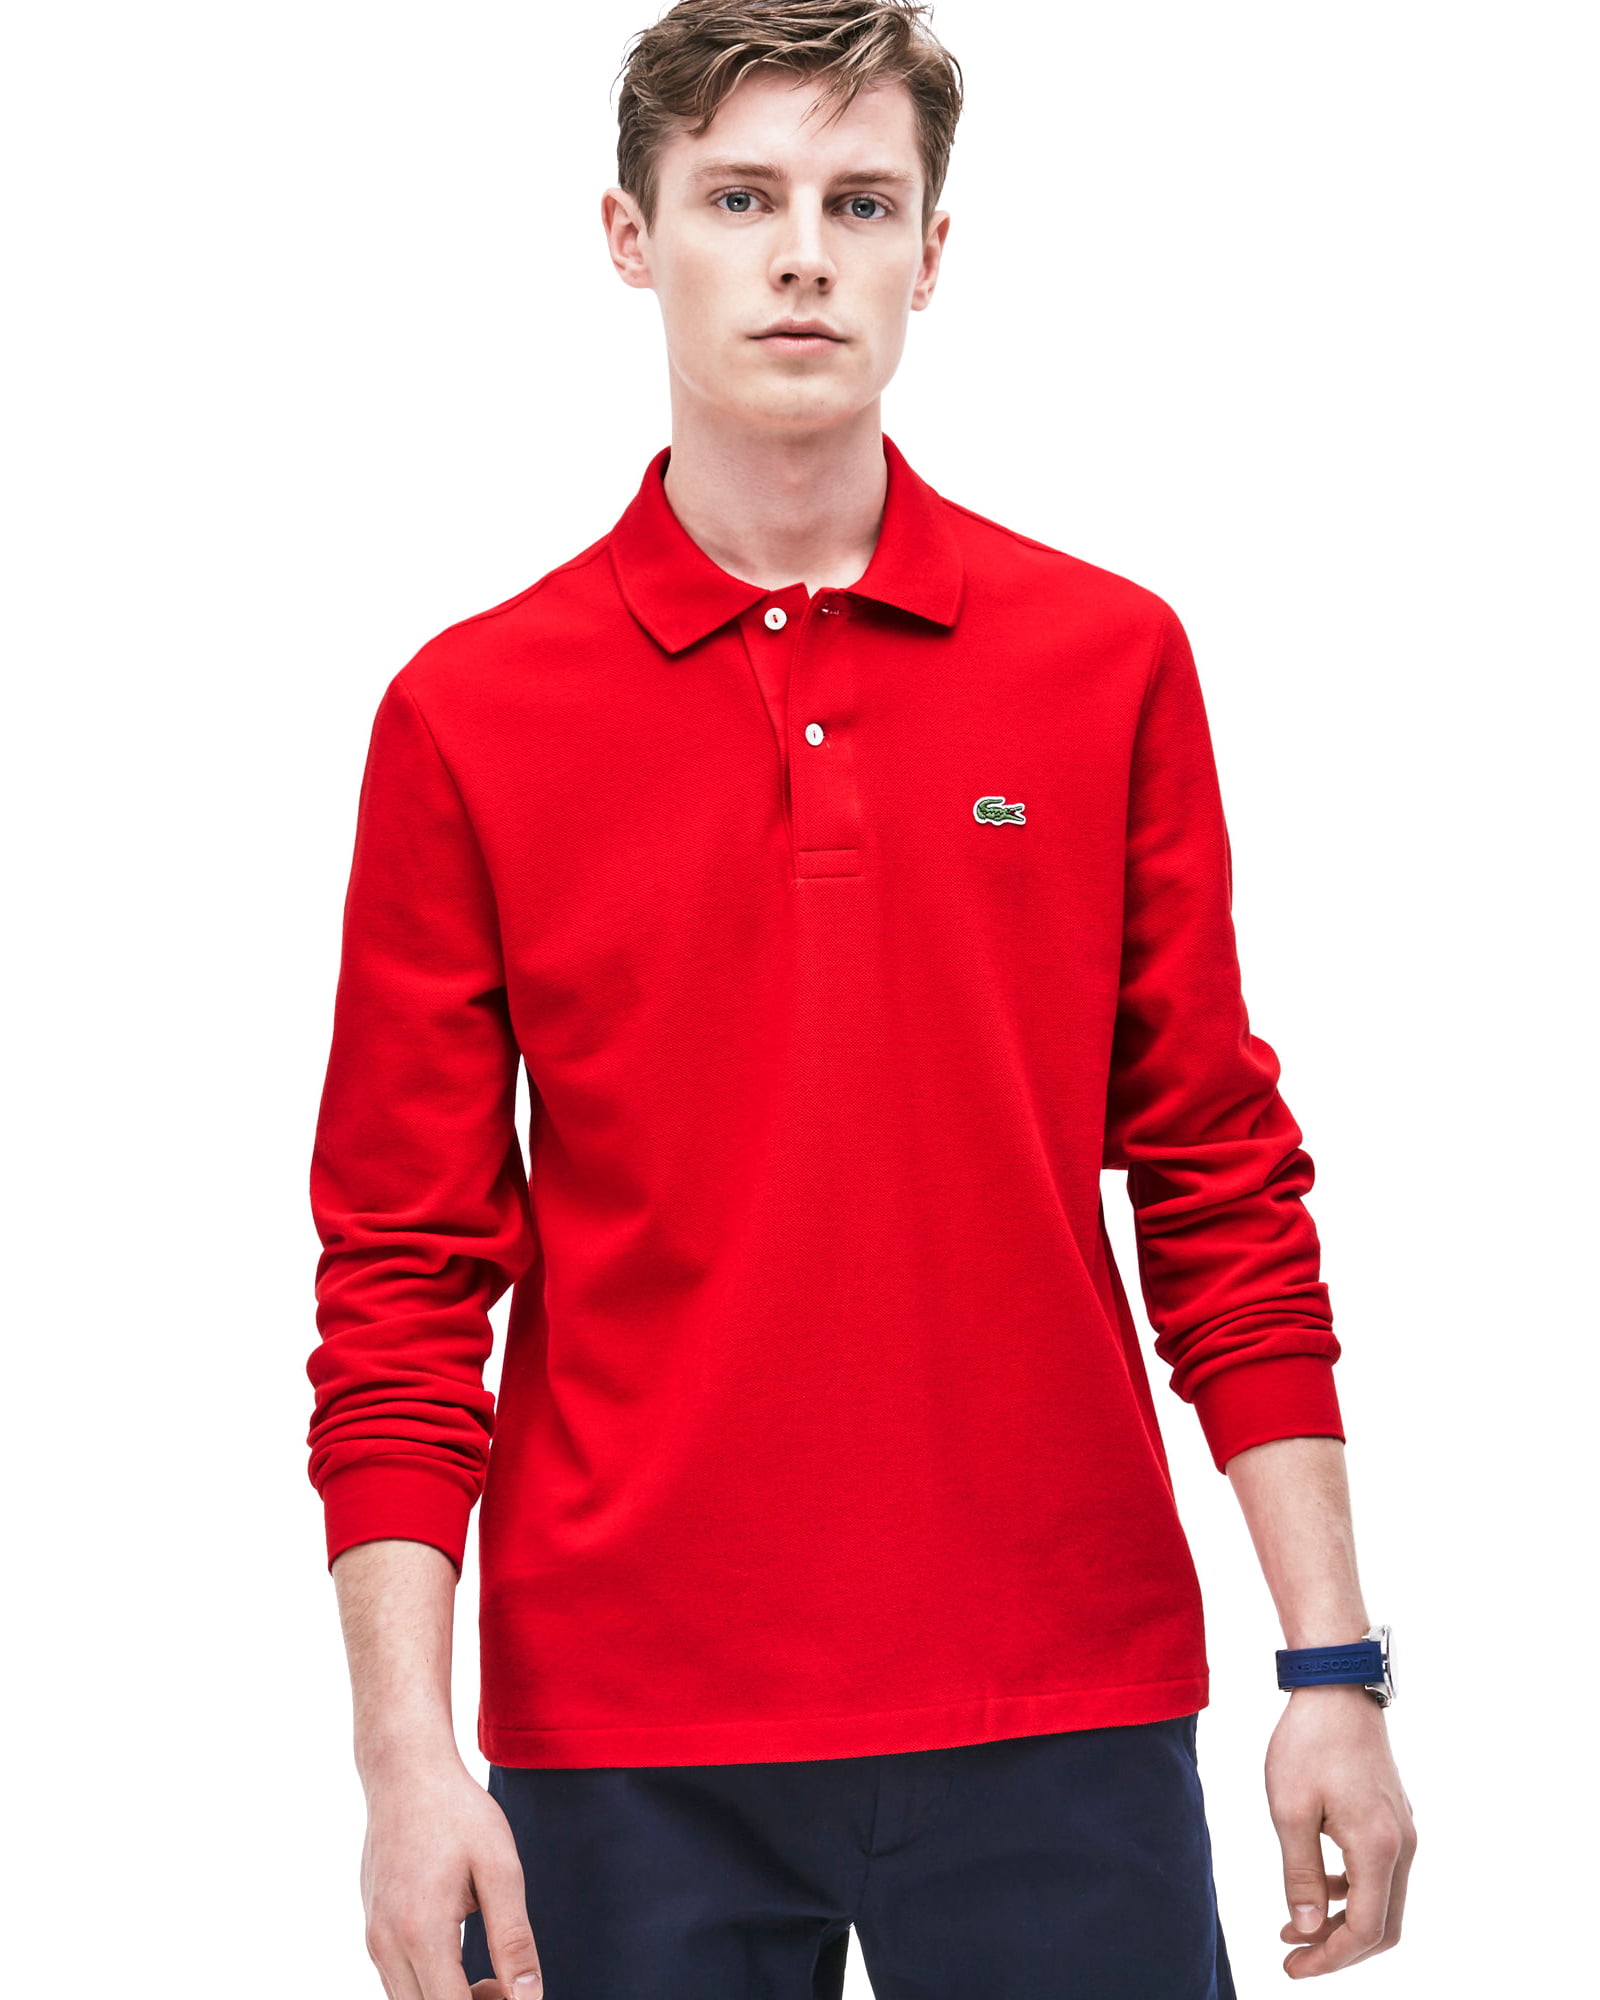 lacoste men's long pique polo shirt, red, x-large - Walmart.com